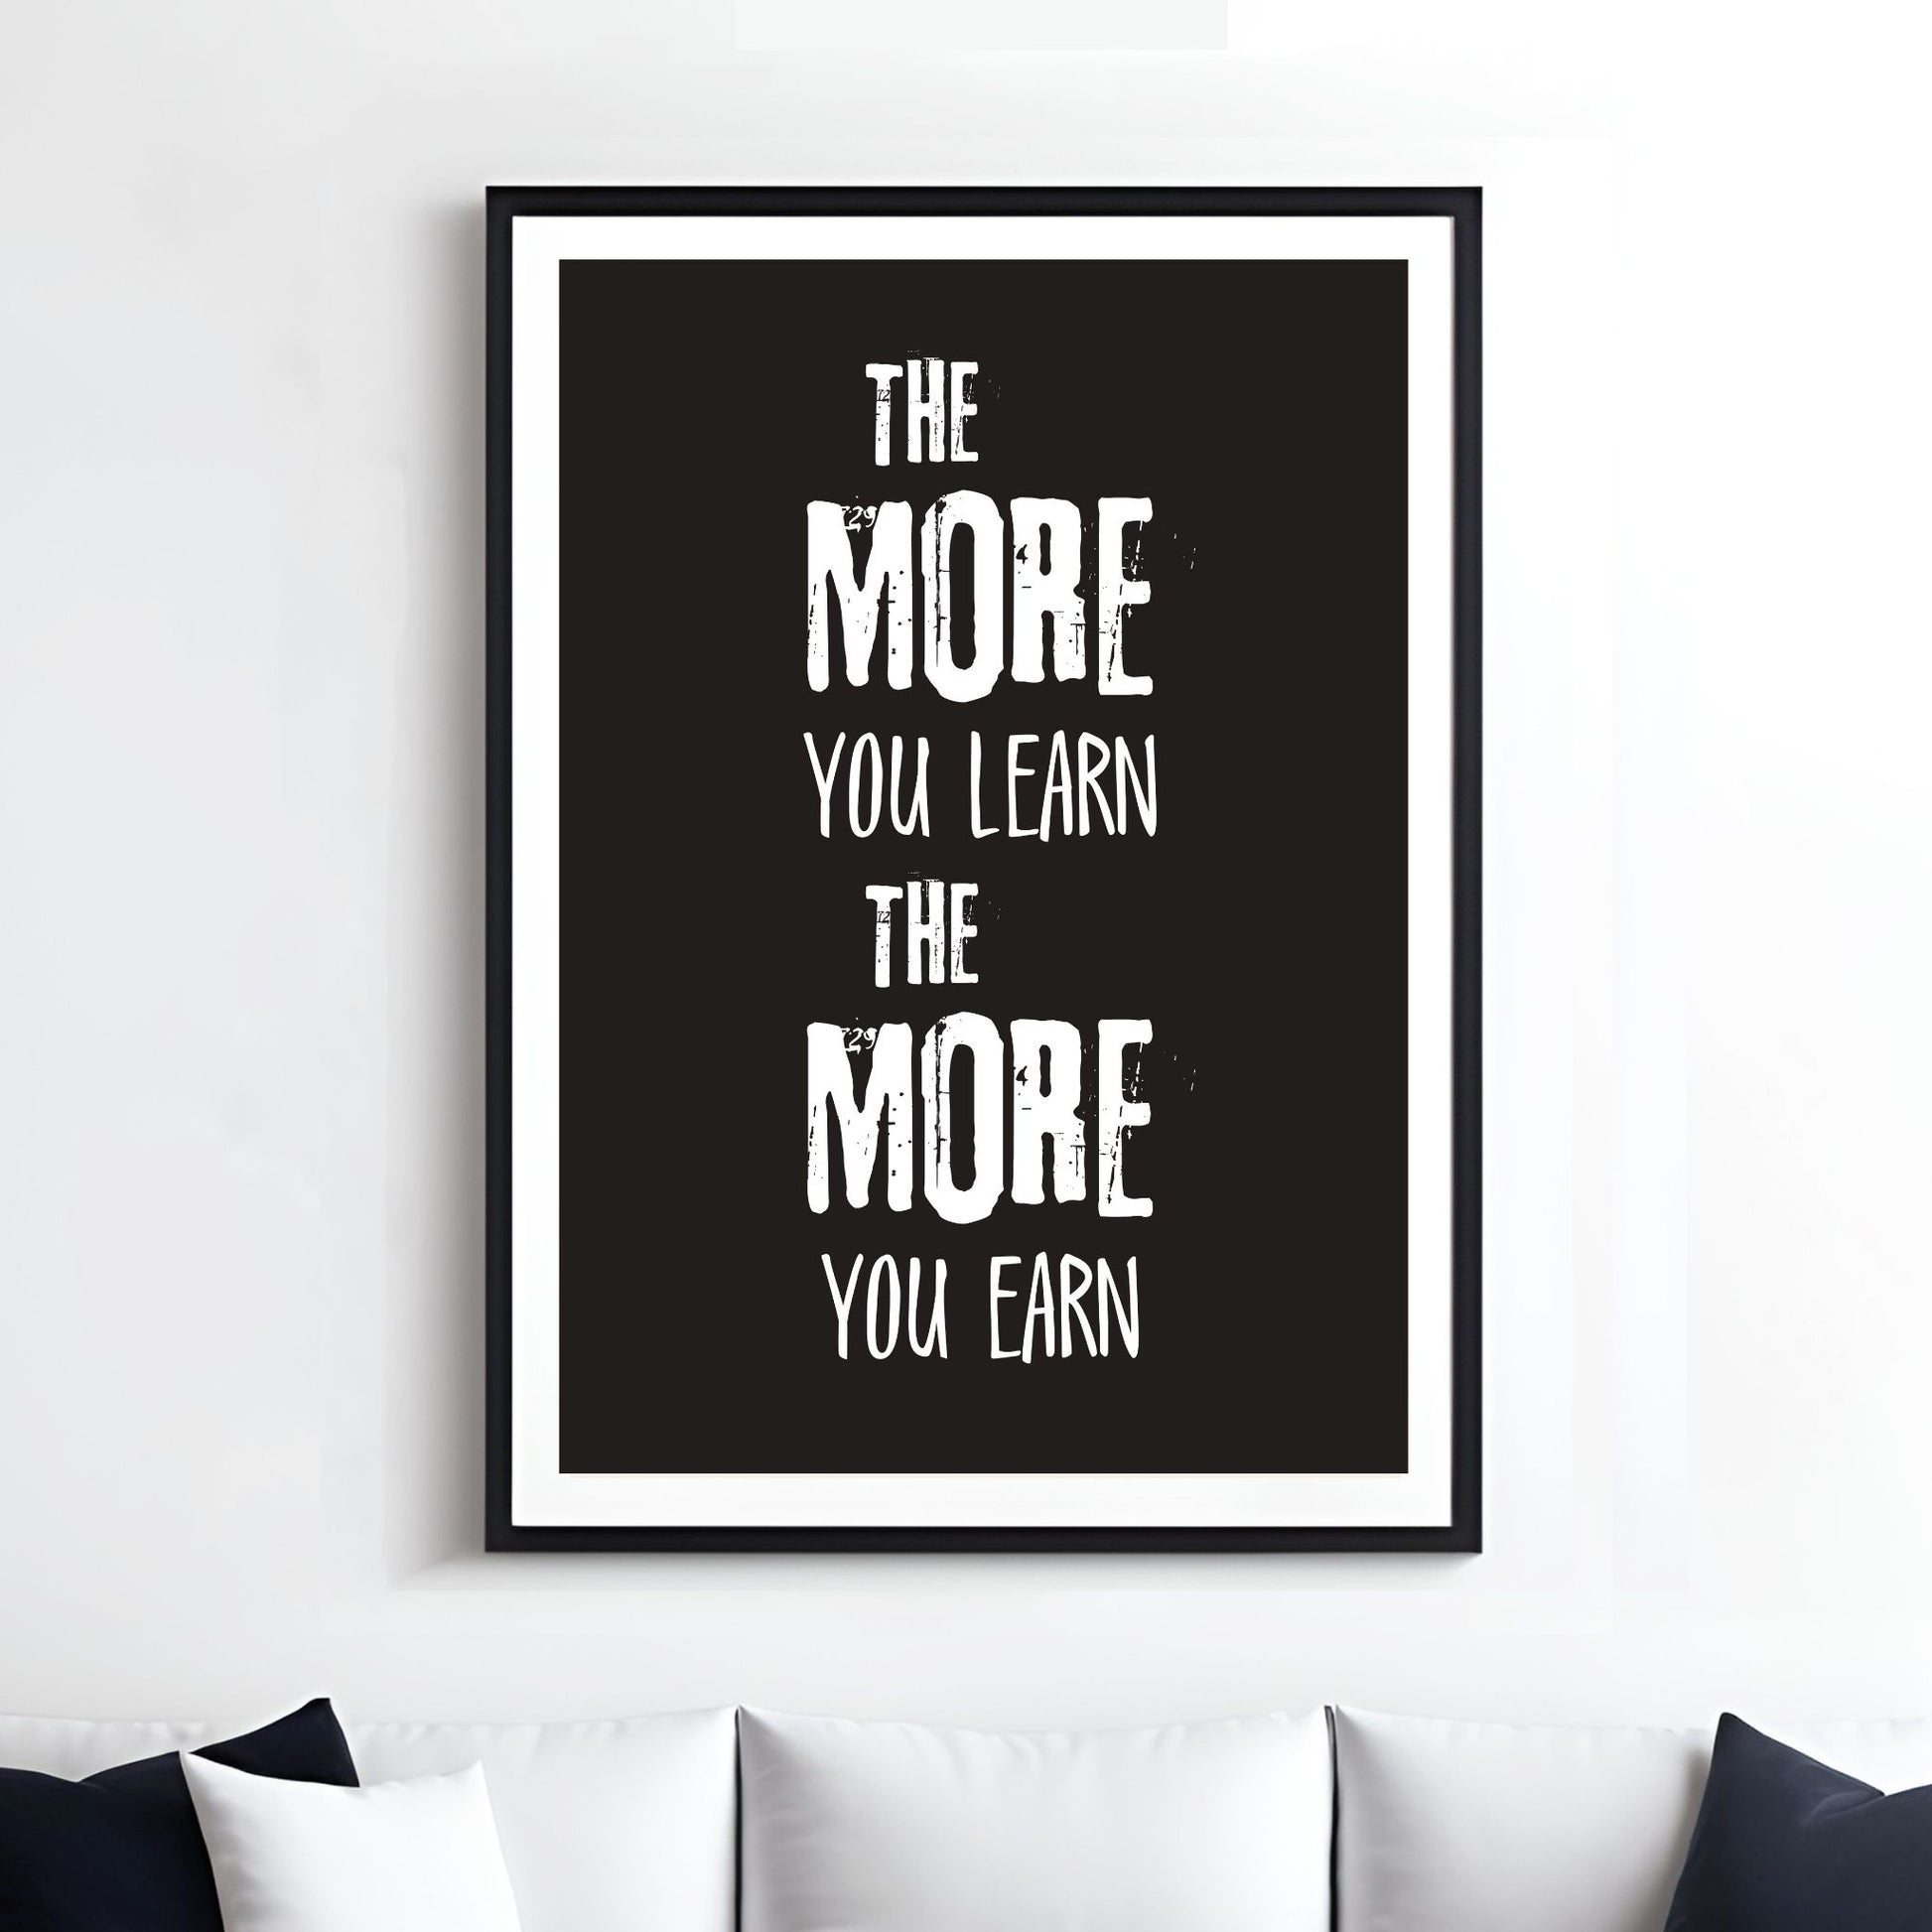 Grafisk tekstplakat med hvit skrift på sort bakgrunn og tekst "The more yoy learn, the more you learn". Illustrasjon viser plakat i sort ramme med passepatout på en vegg over en sofa.